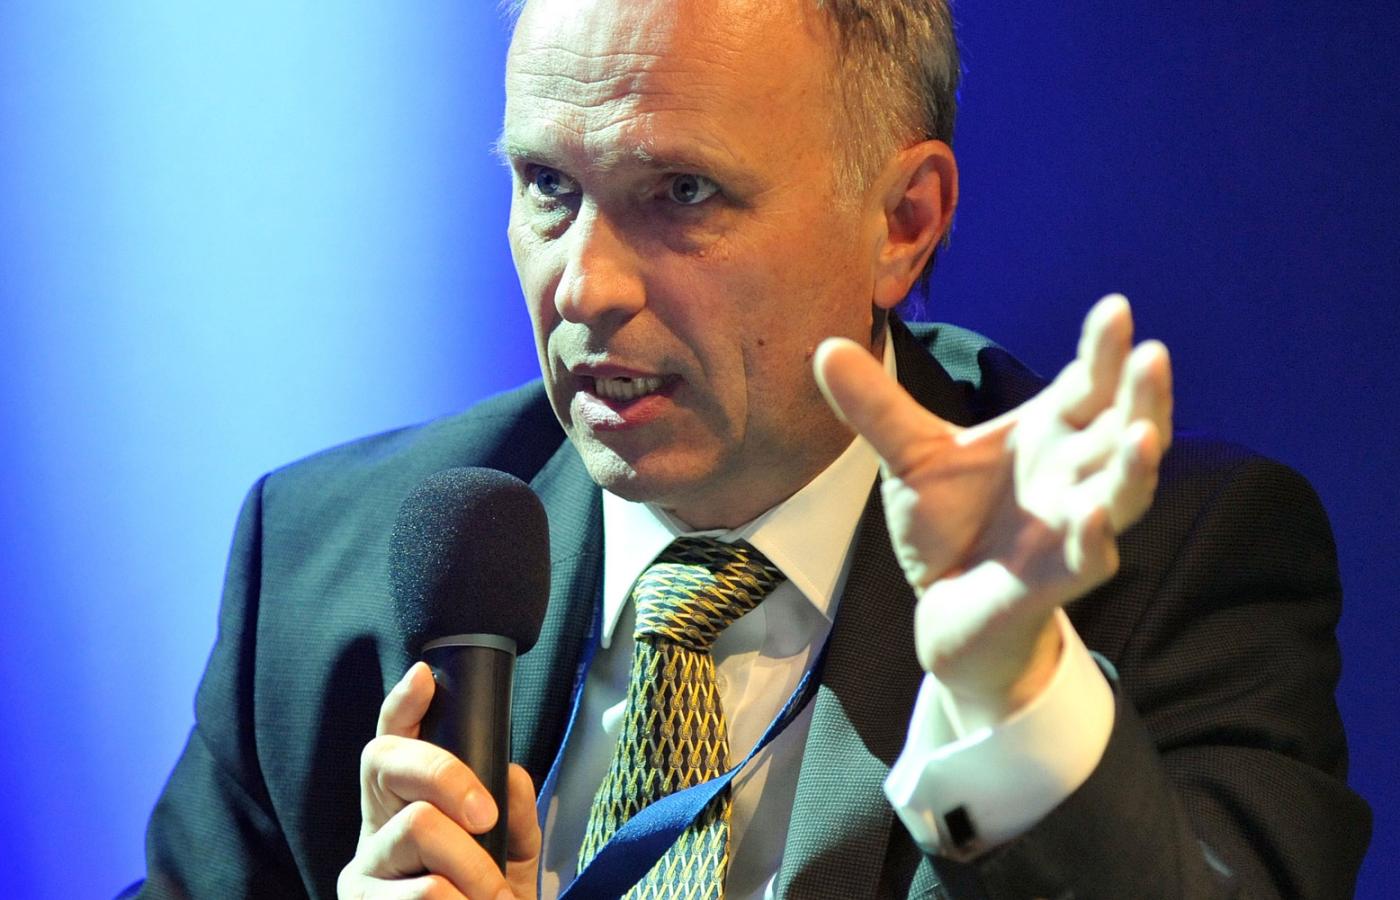 Andrzej Jakubiak jest przewodniczącym KNF od niespełna roku. Poprzednie pięć lat spędził w warszawskim ratuszu u boku prezydent Hanny Gronkiewicz-Waltz jako jej zastępca.